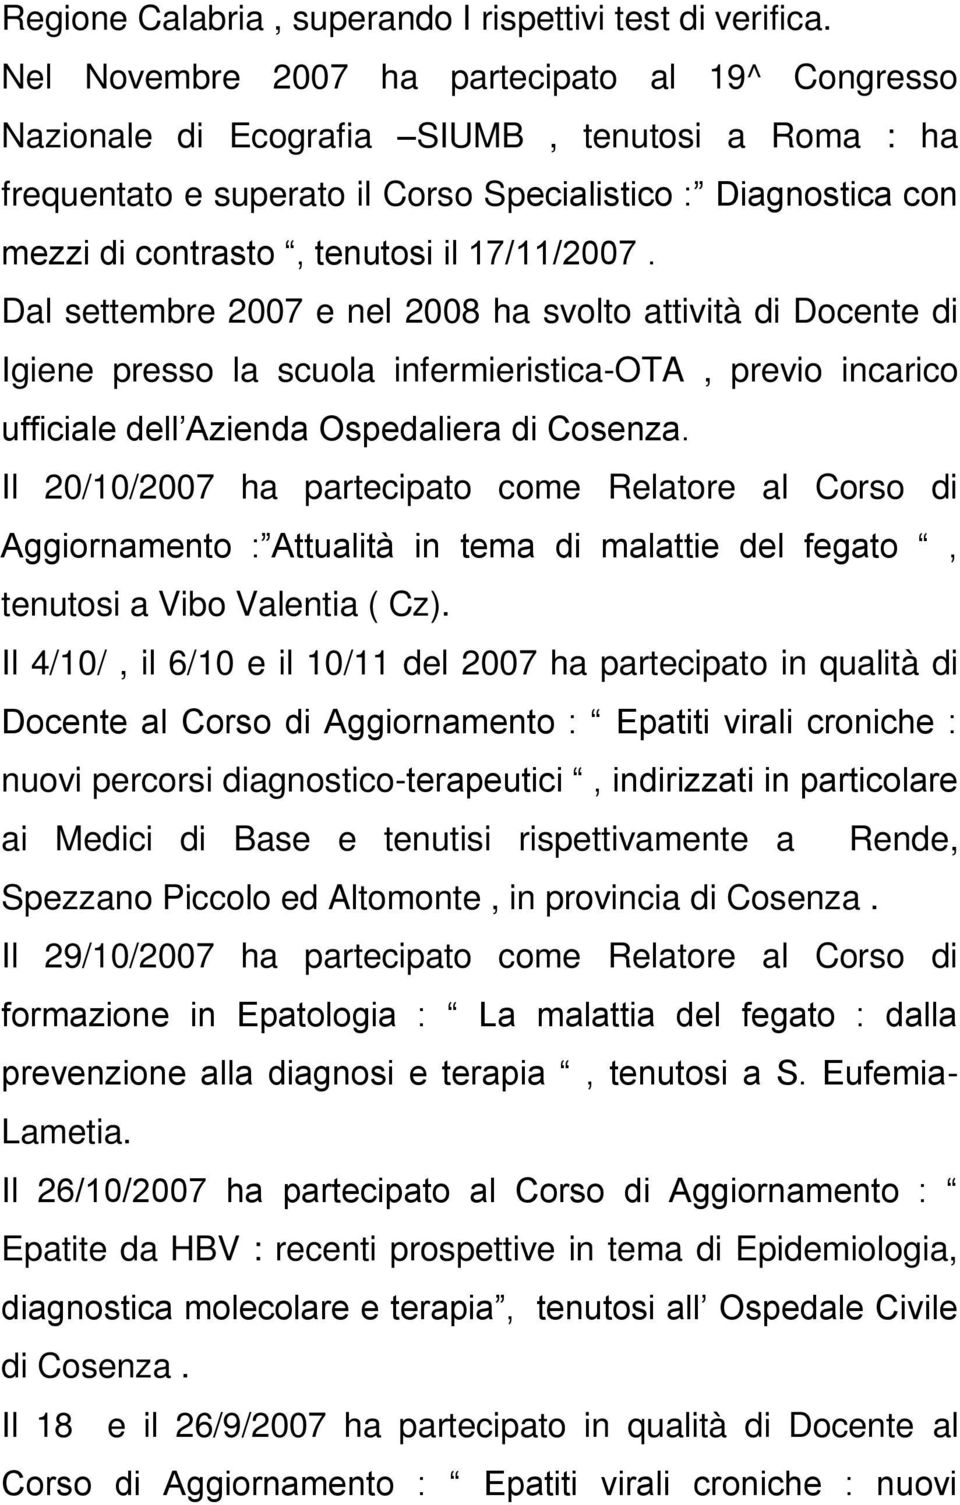 17/11/2007. Dal settembre 2007 e nel 2008 ha svolto attività di Docente di Igiene presso la scuola infermieristica-ota, previo incarico ufficiale dell Azienda Ospedaliera di Cosenza.